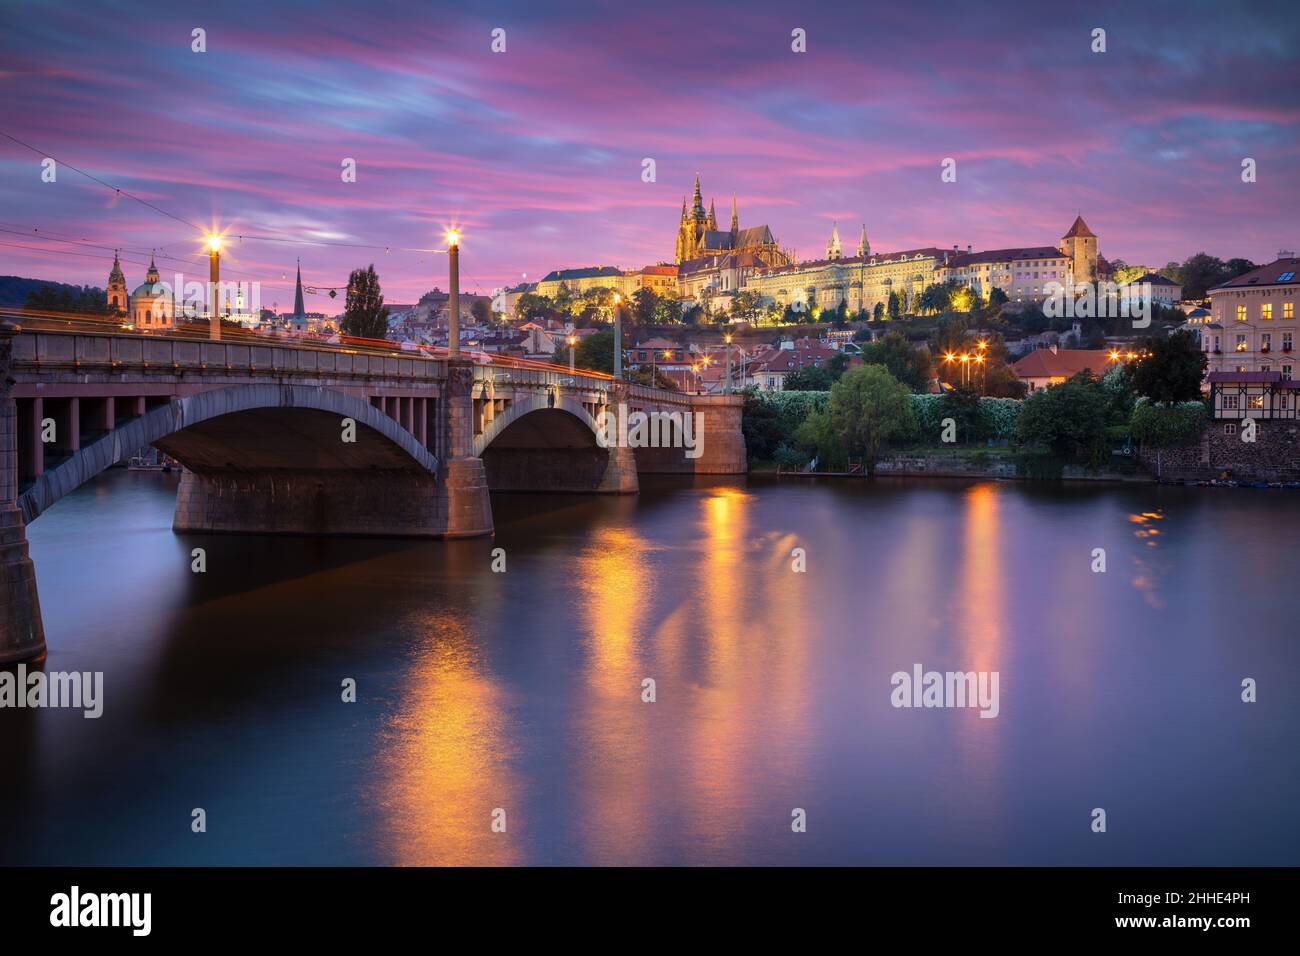 Praga, República Checa. Imagen del paisaje urbano de Praga, capital de la República Checa con la Catedral de San Vito y el Puente de Carlos sobre el río Vltava en Foto de stock